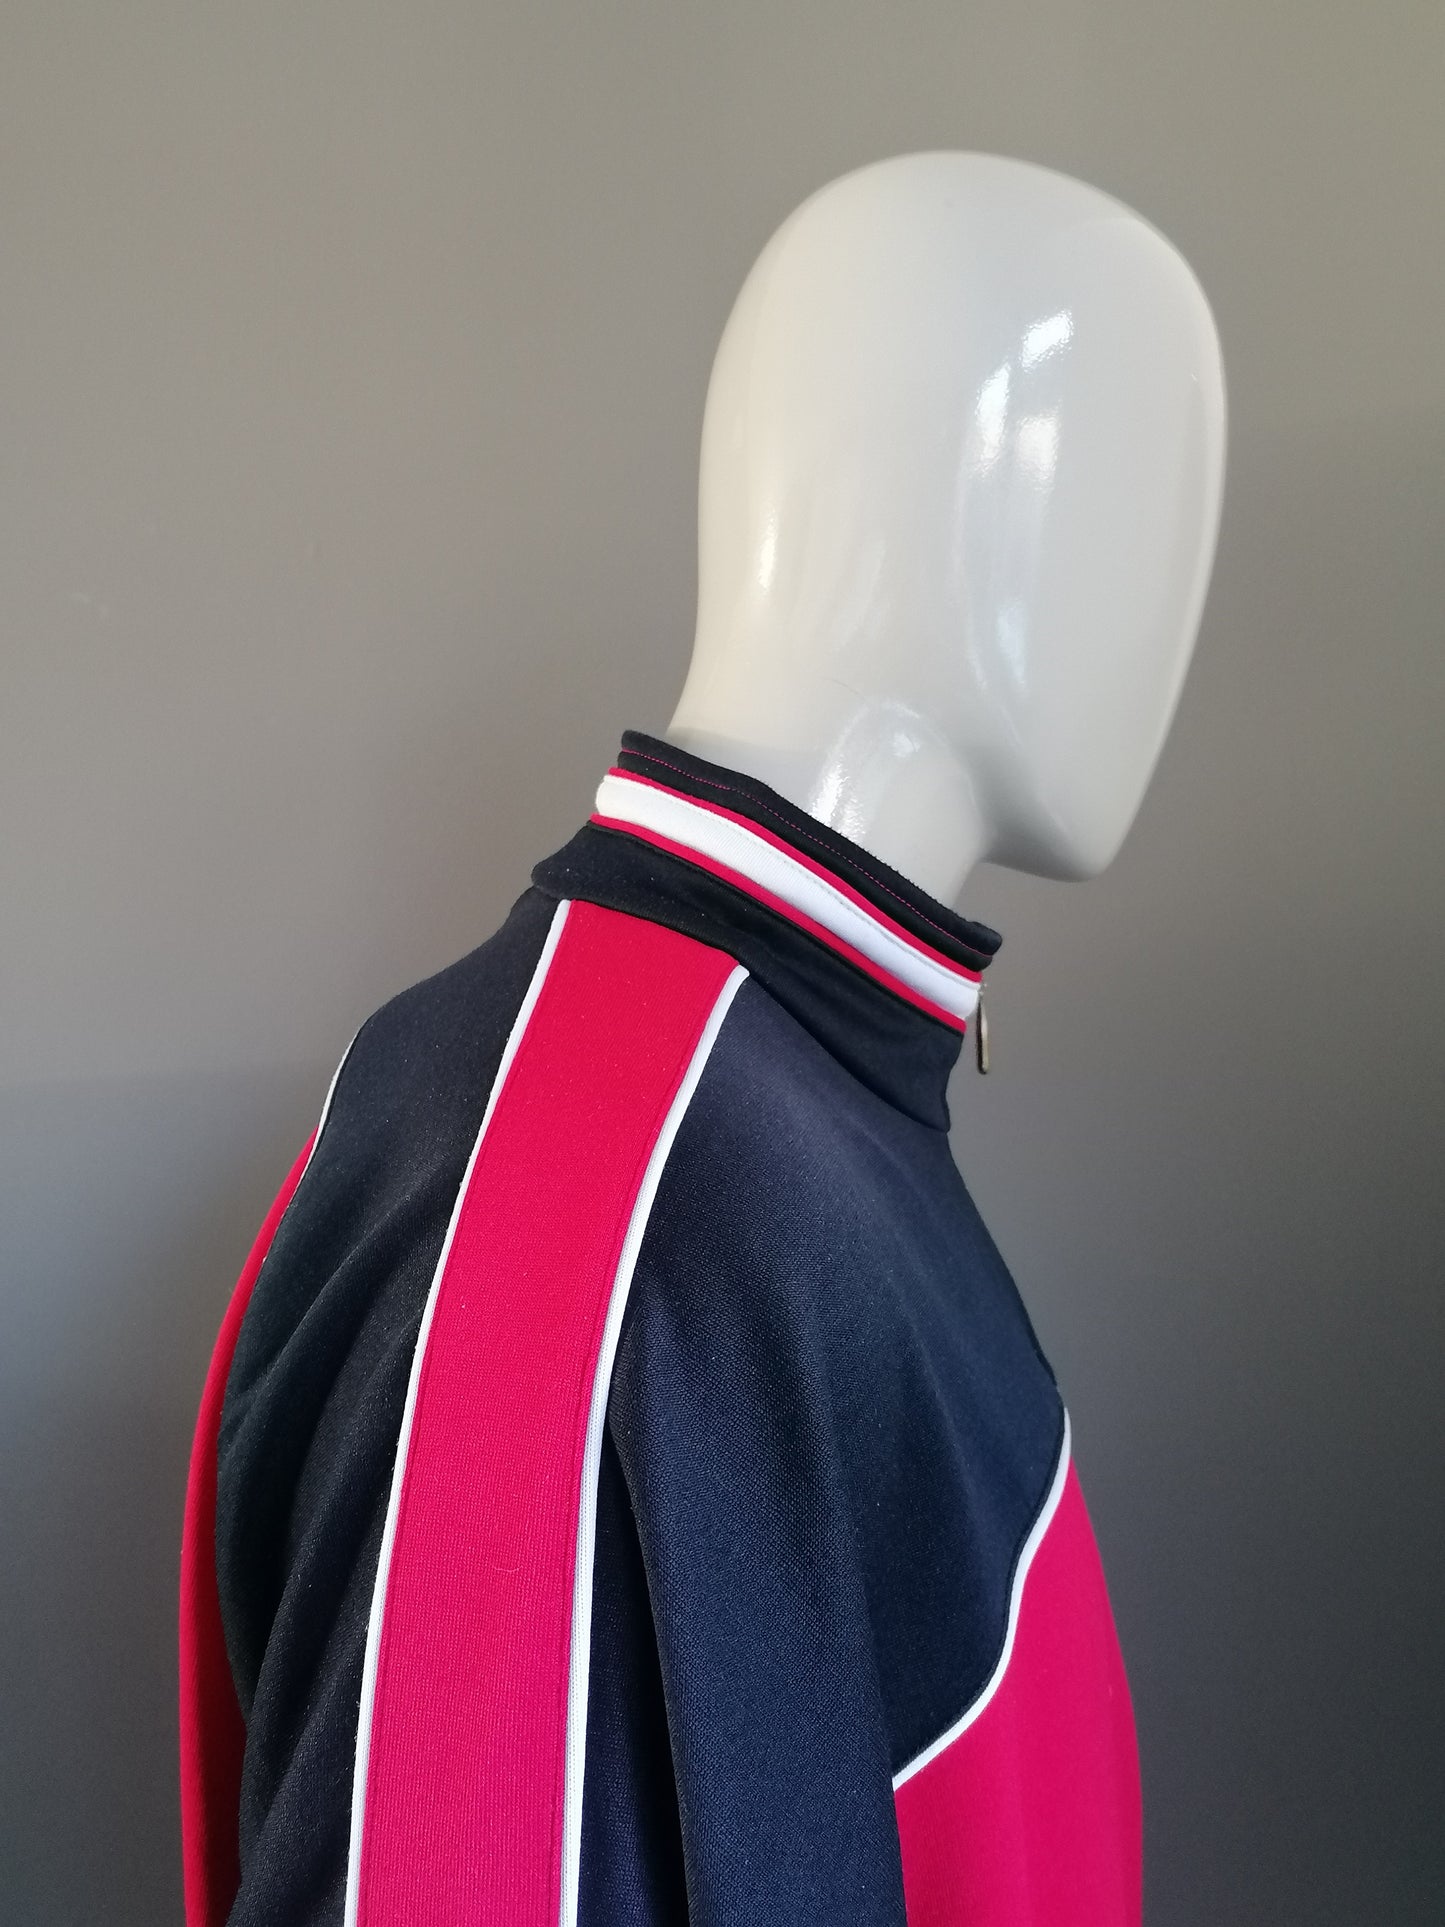 Vintage Jako 80's-90's Sport trui met rits. Rood Zwart gekleurd. Oversized L / XXL.